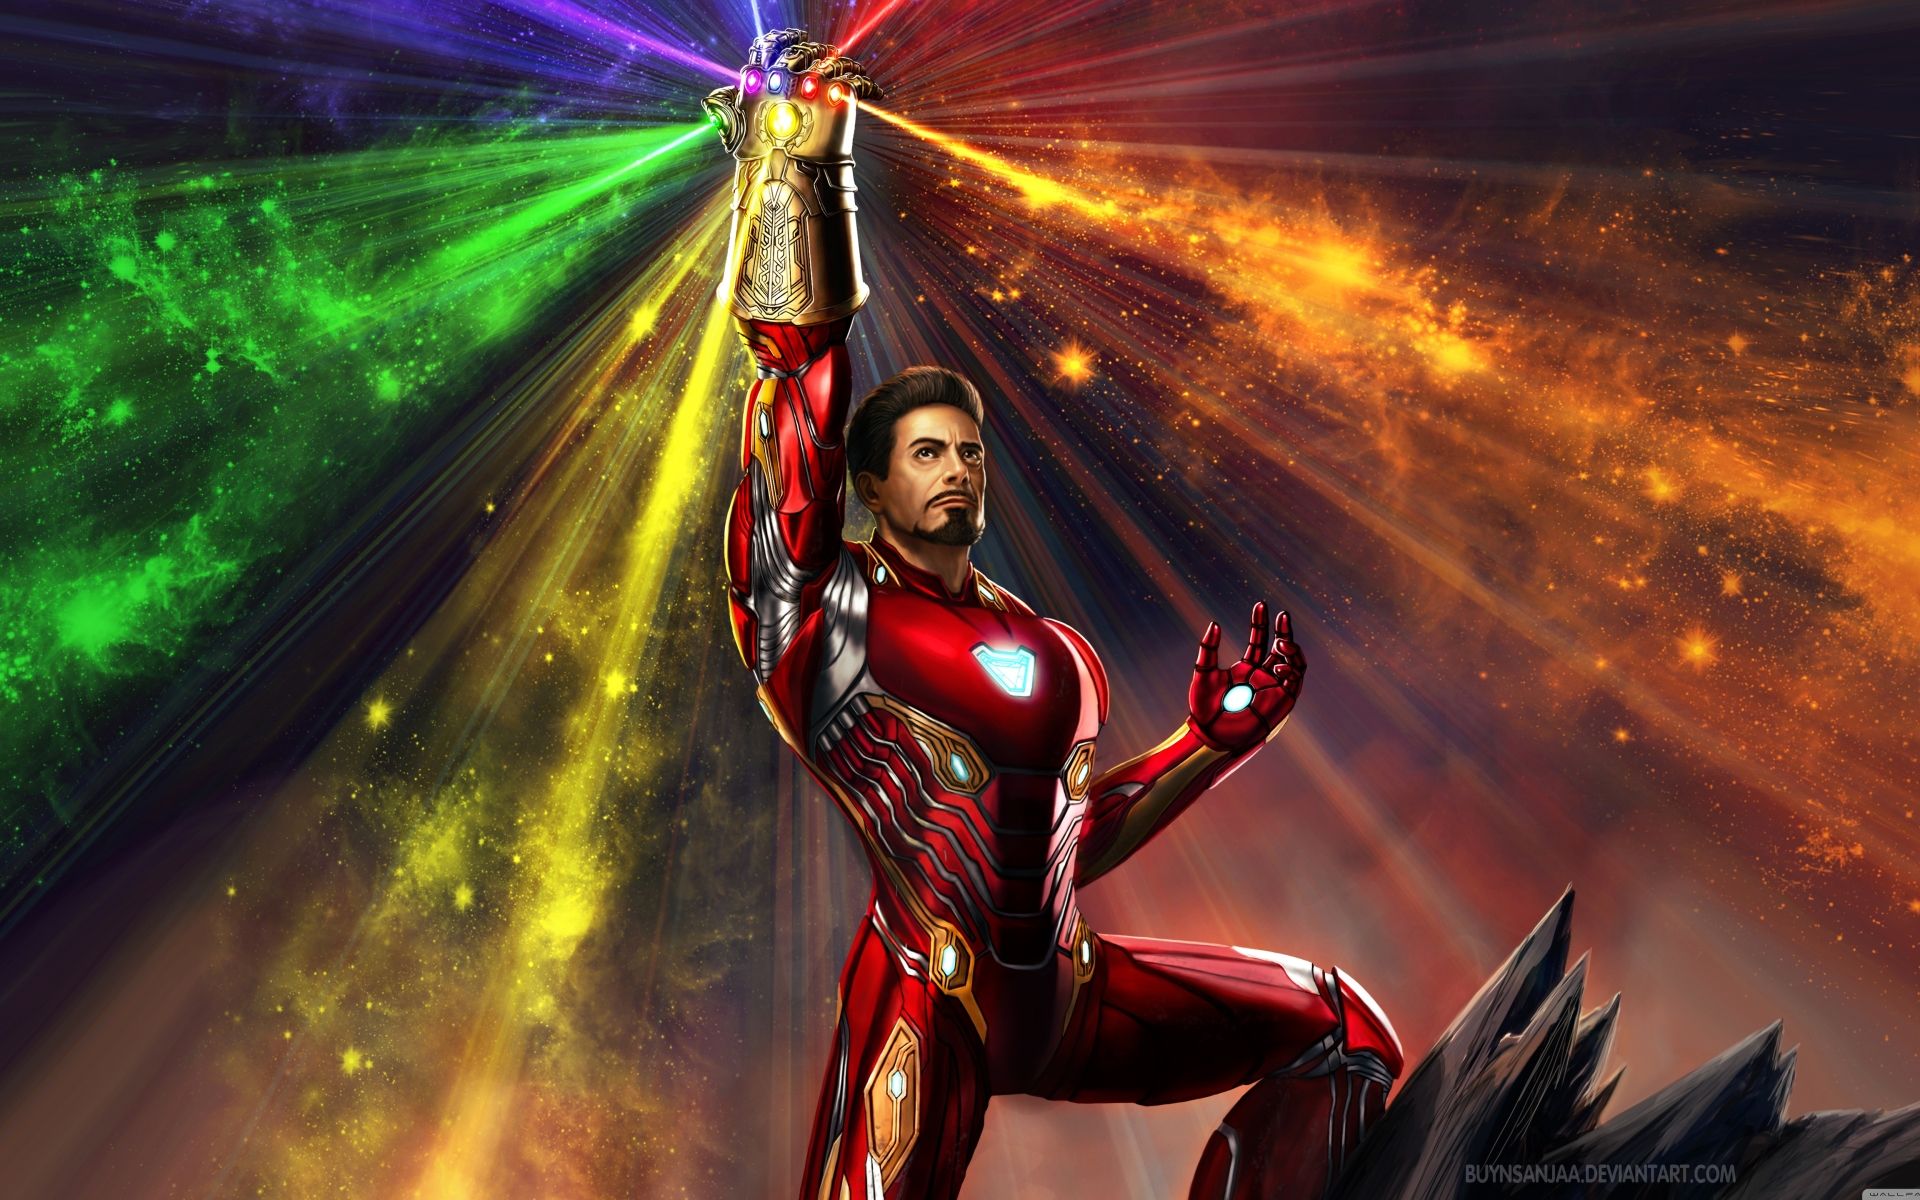 Tony Stark Endgame Wallpaper